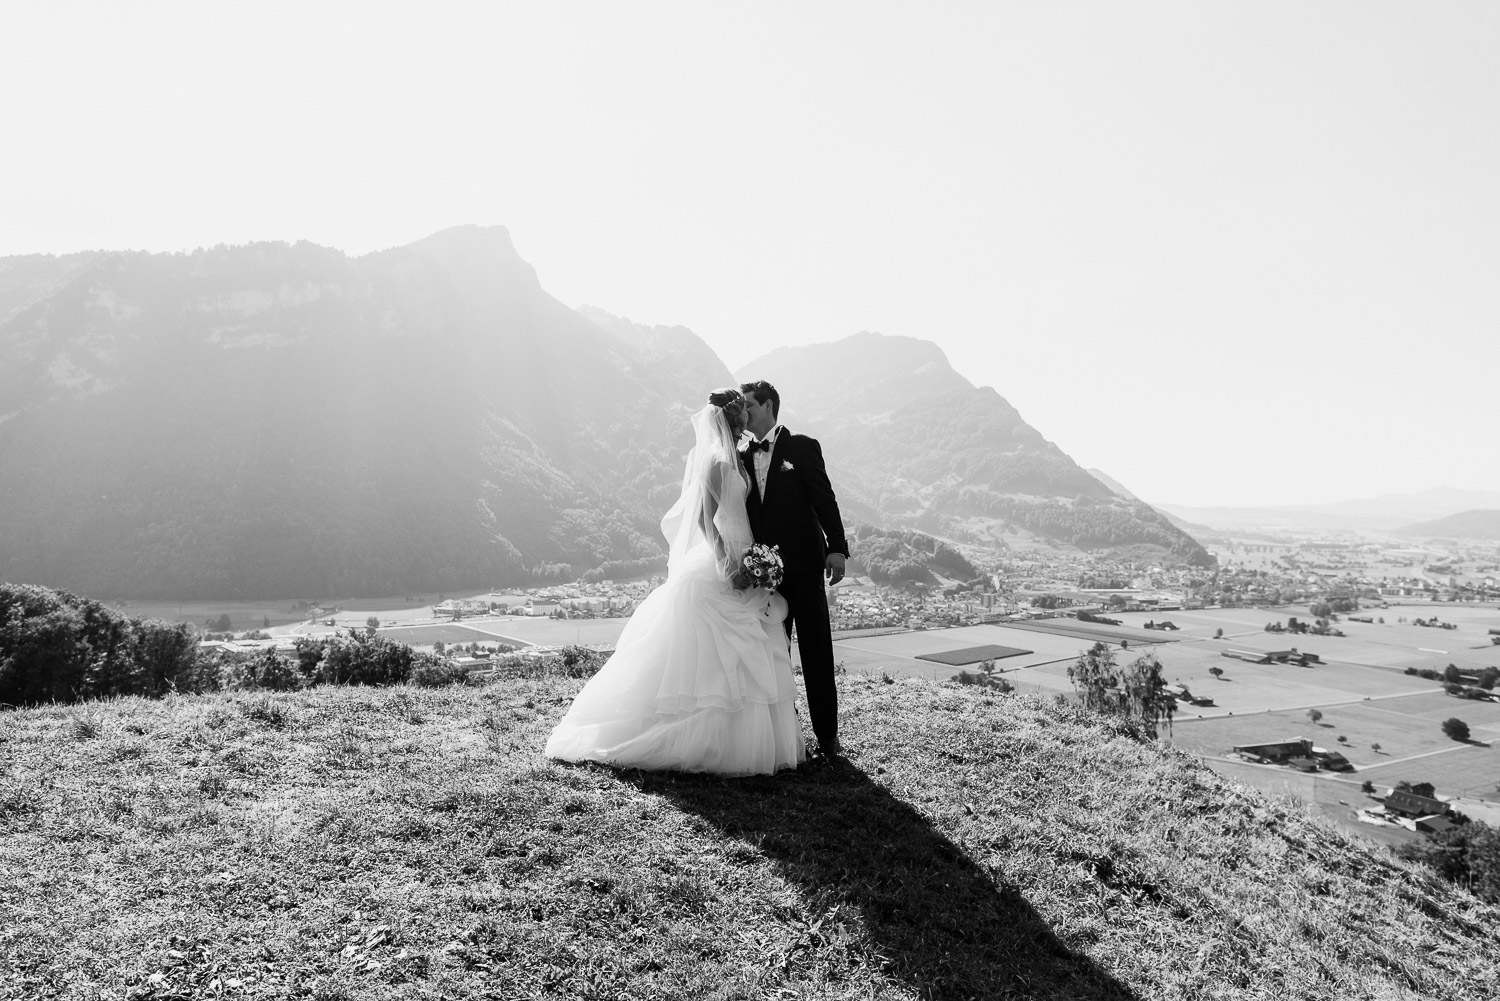 Brautpaar auf einem Hügel mit atemberaubender Aussicht